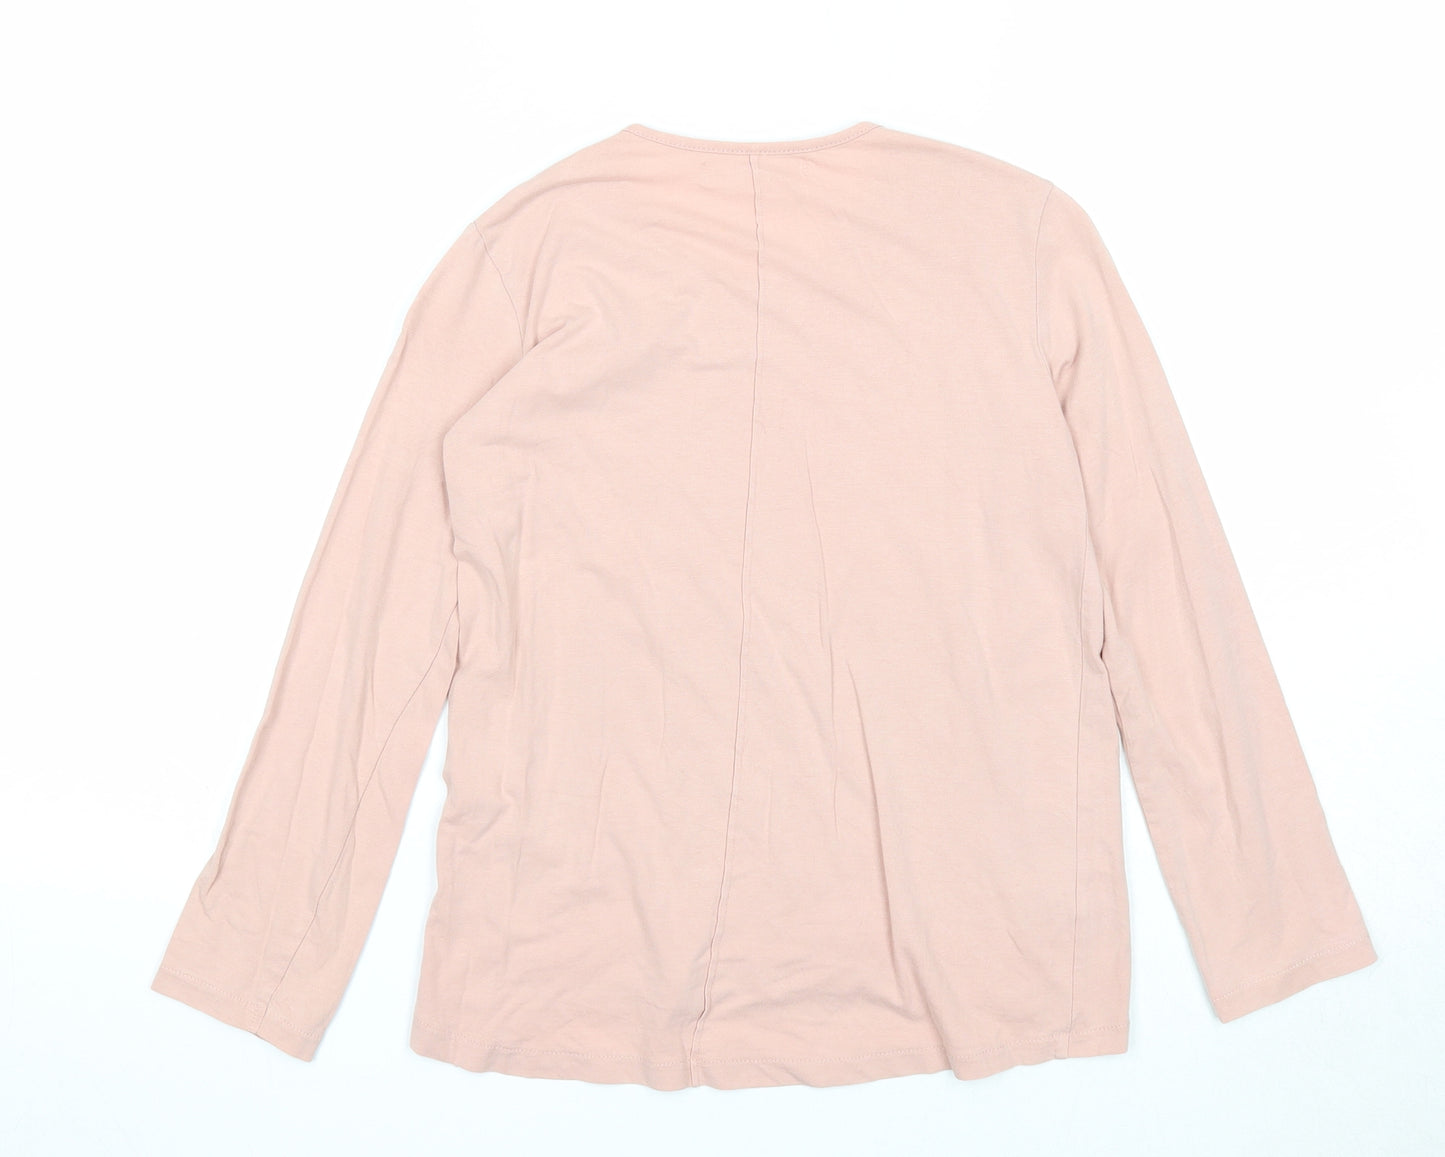 Zara Girls Pink Cotton Basic T-Shirt Size 8 Years Round Neck Pullover